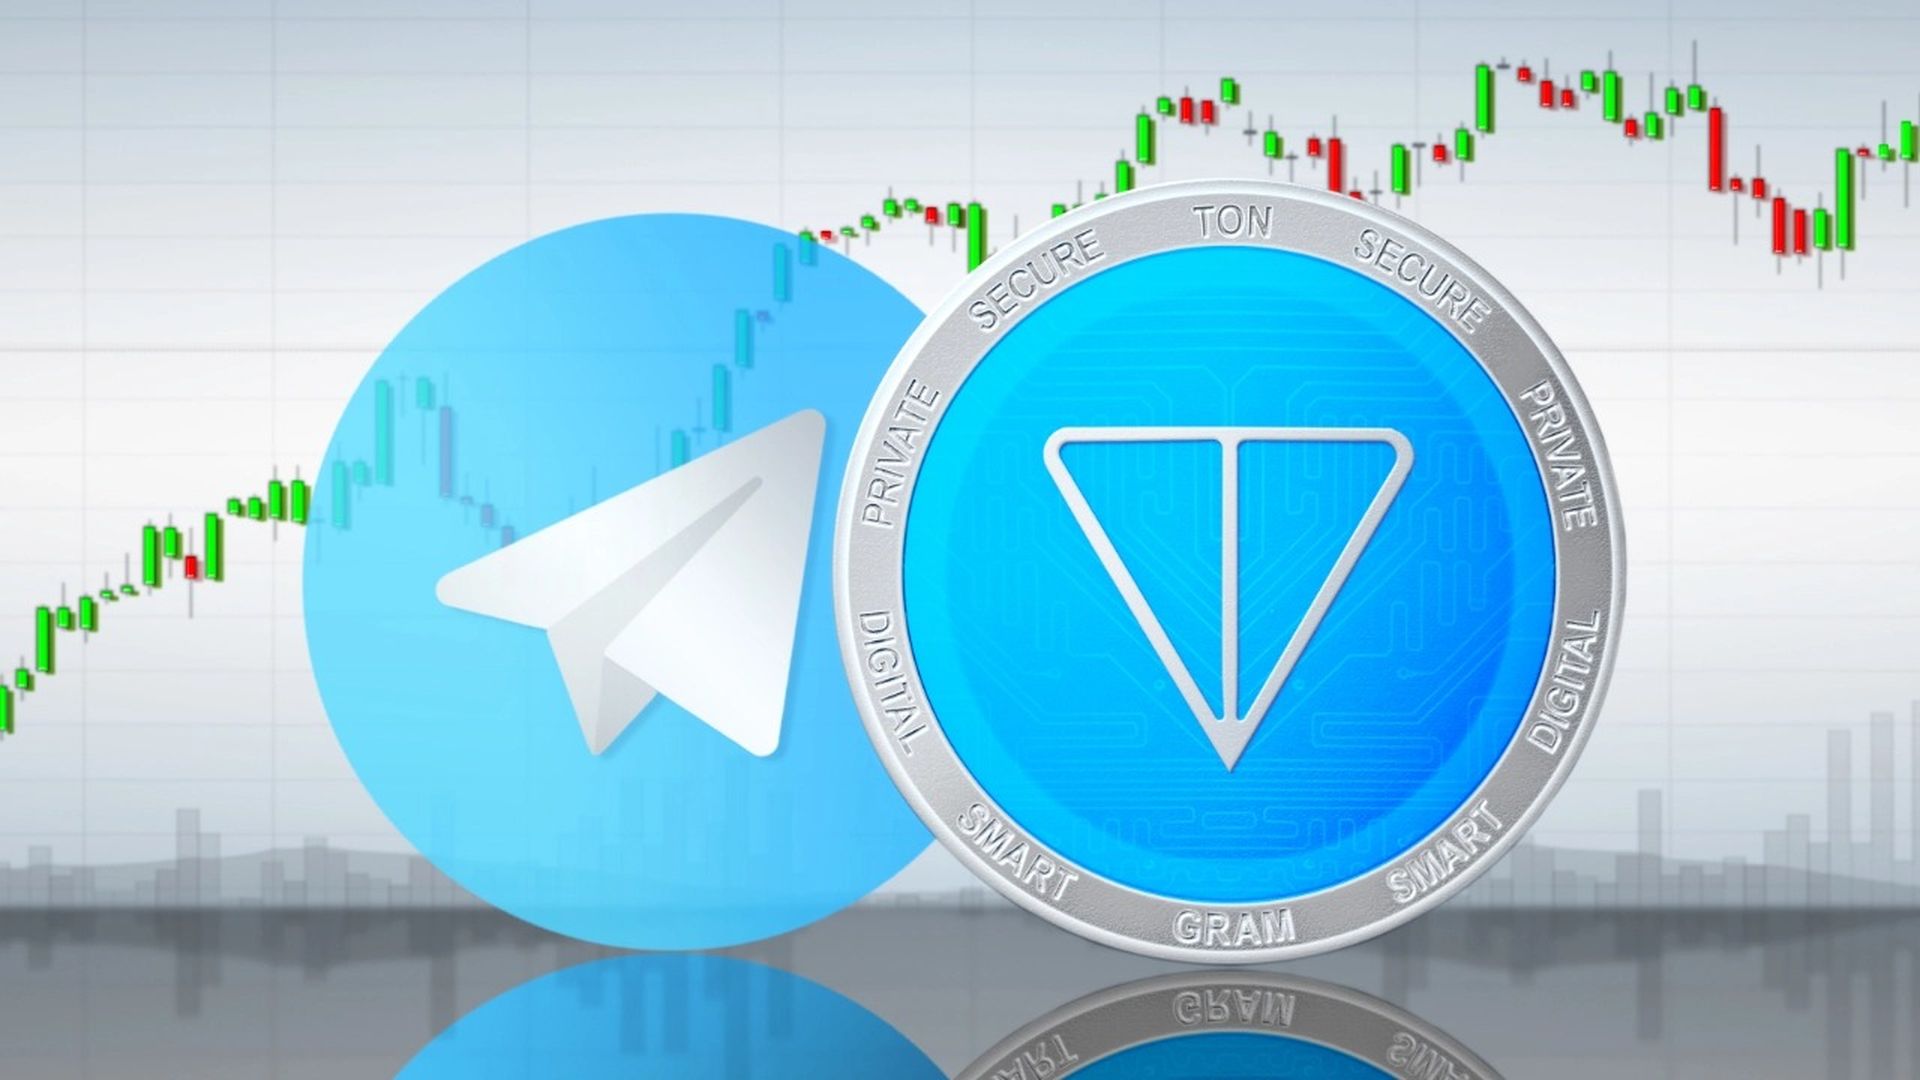 Użytkownicy telegramu mogą teraz handlować TON za pomocą platformy do przesyłania wiadomości